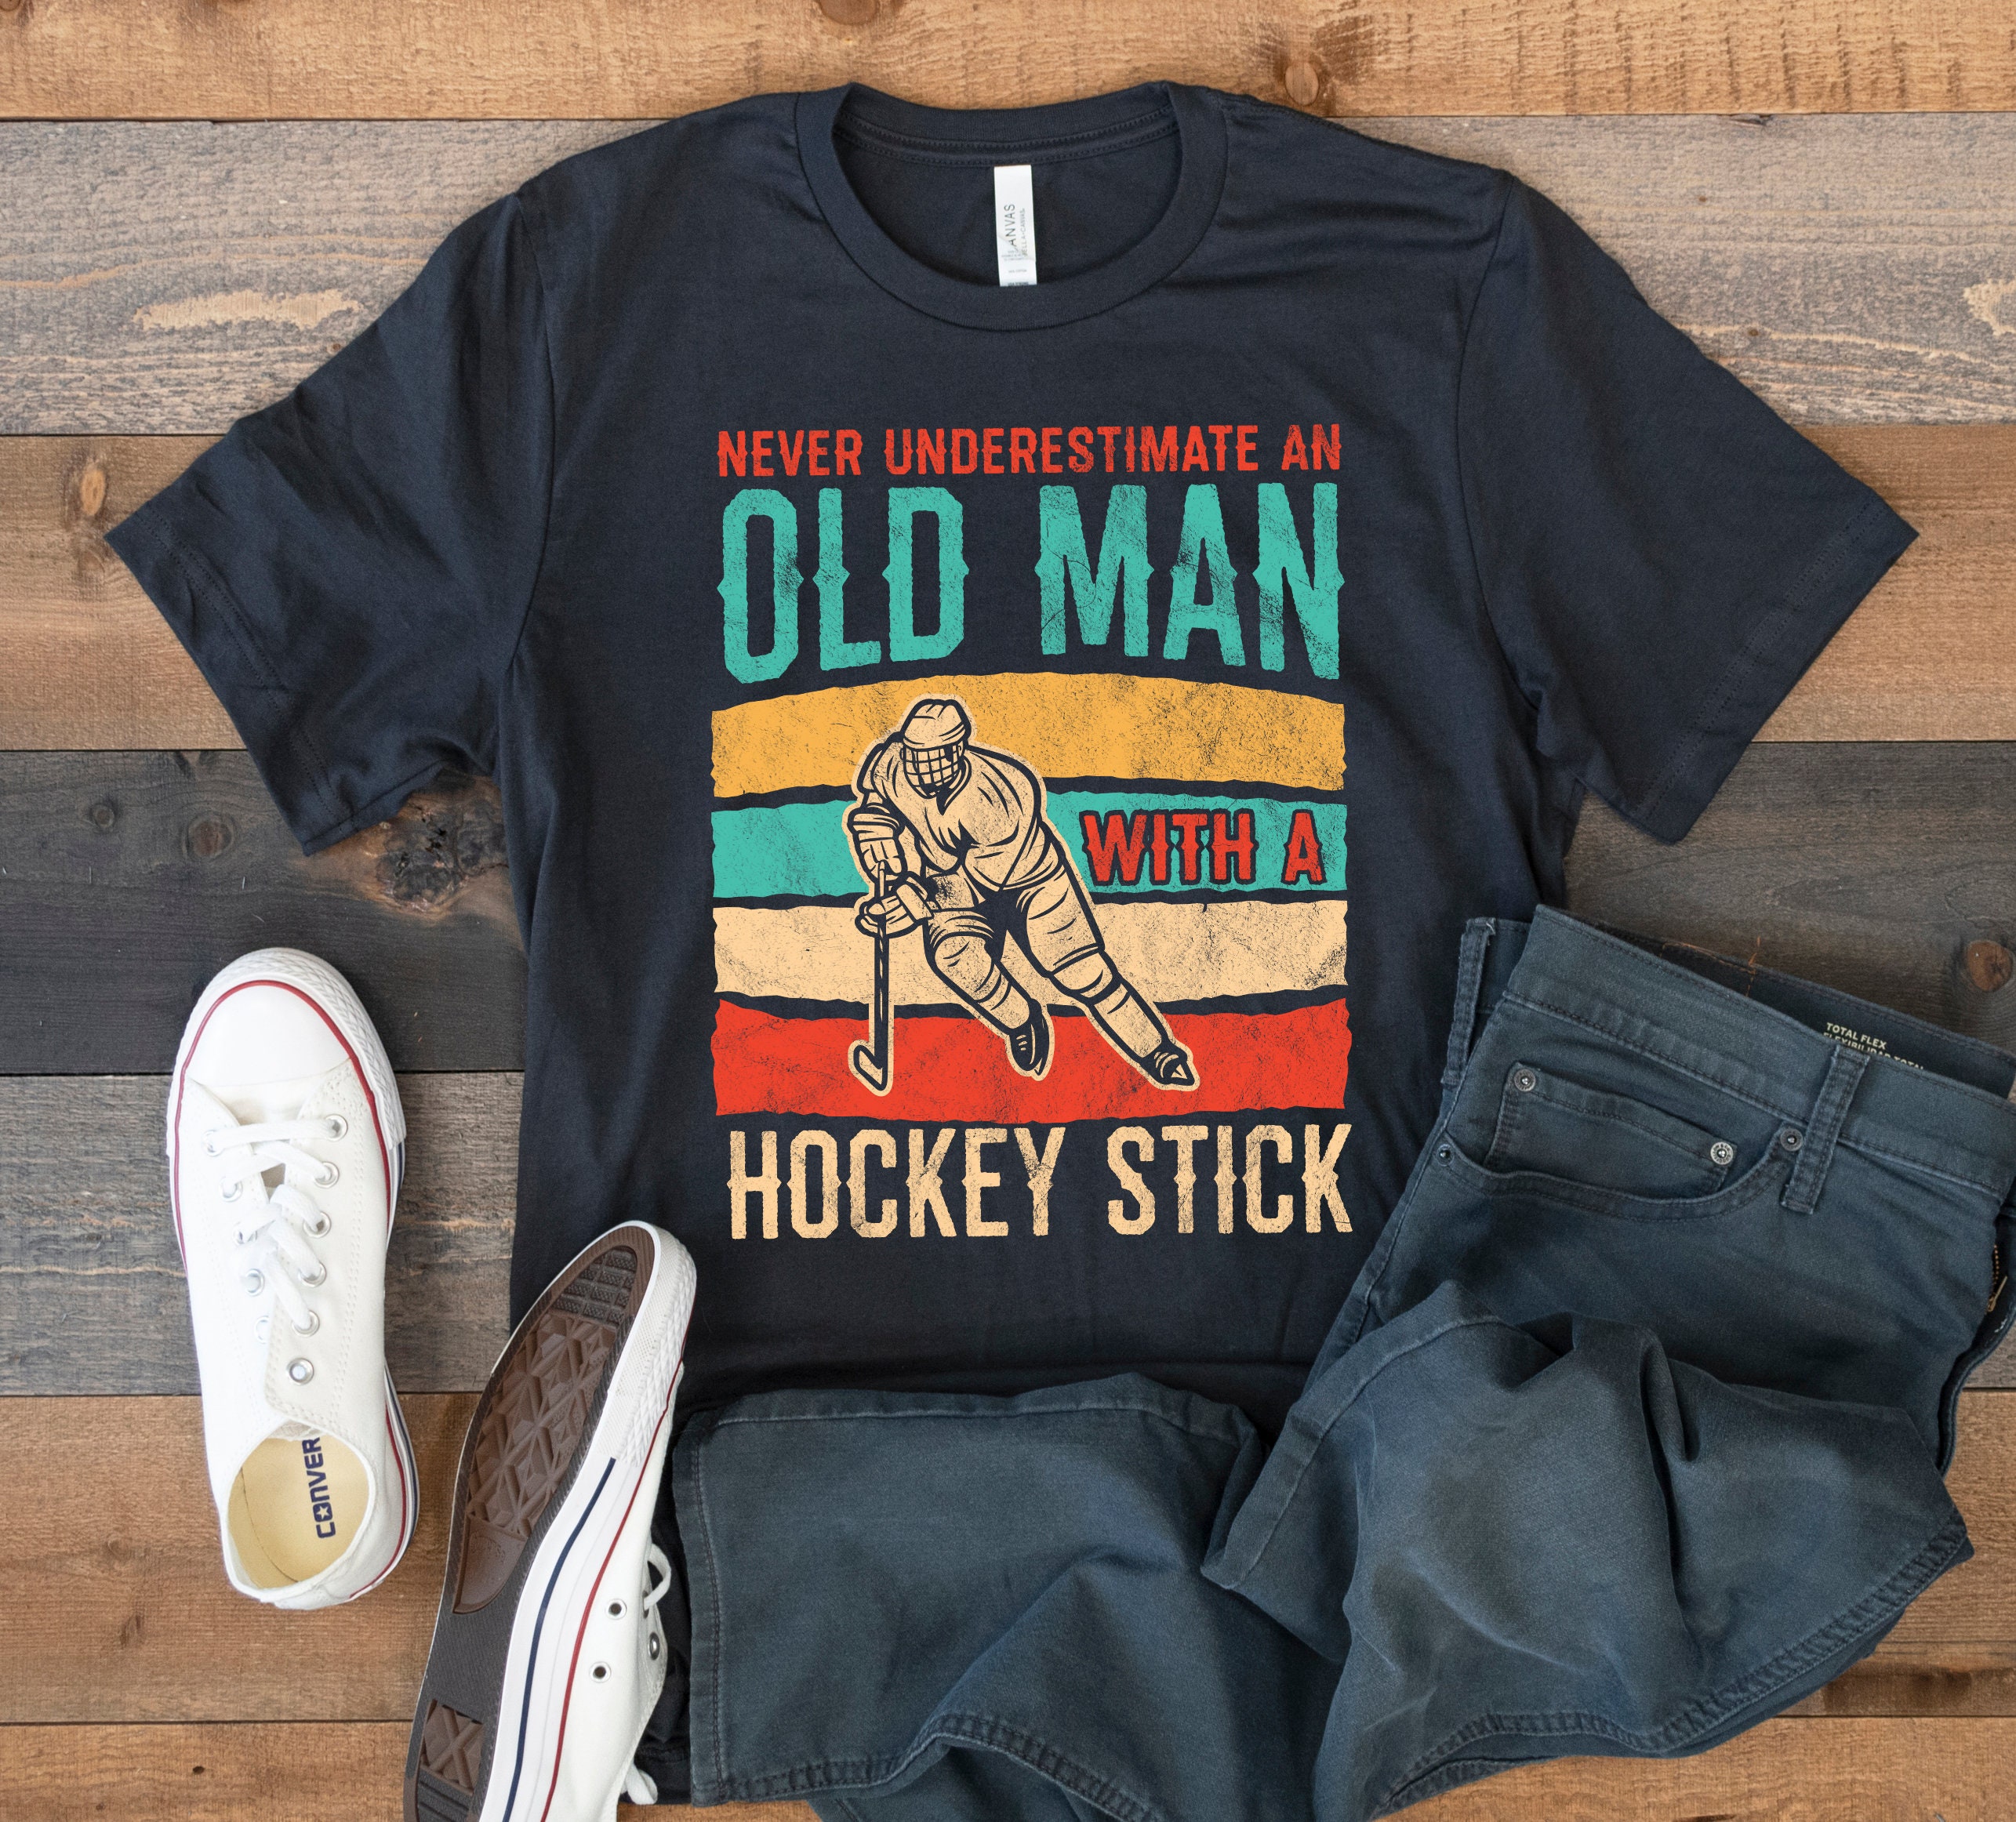 Trends Nashville Smashville Hockey Vintage T-shirt For Men Women 